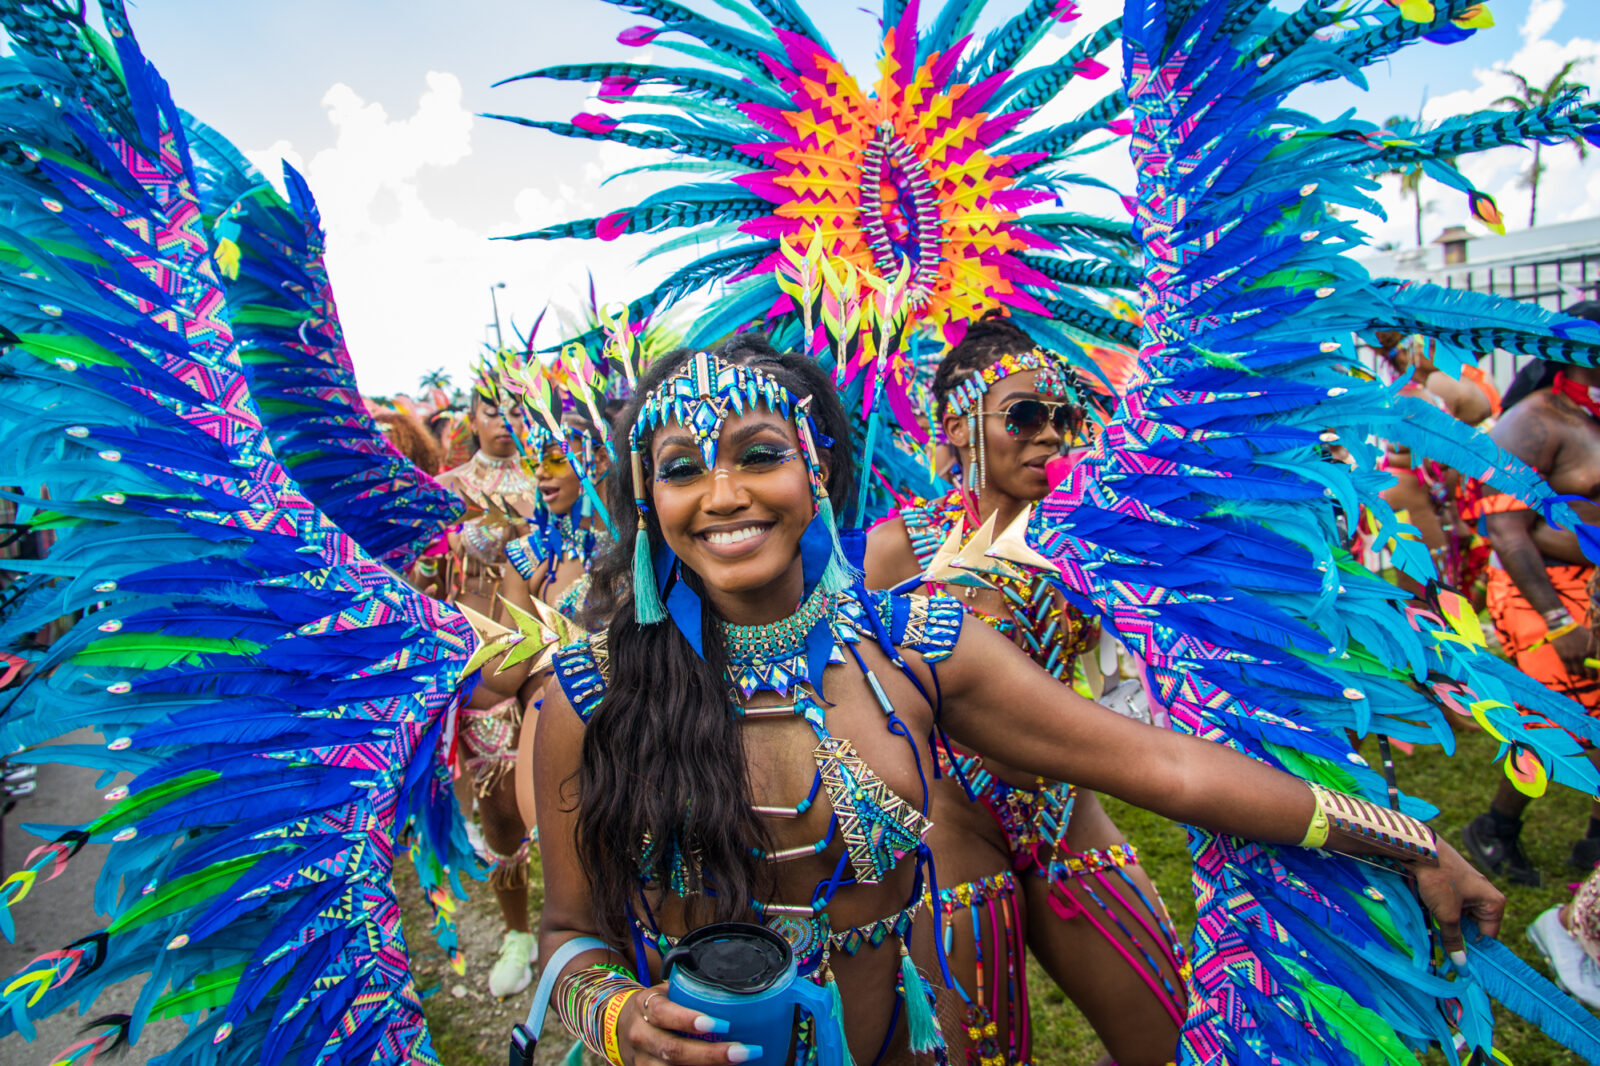 Miami Carnival 2023